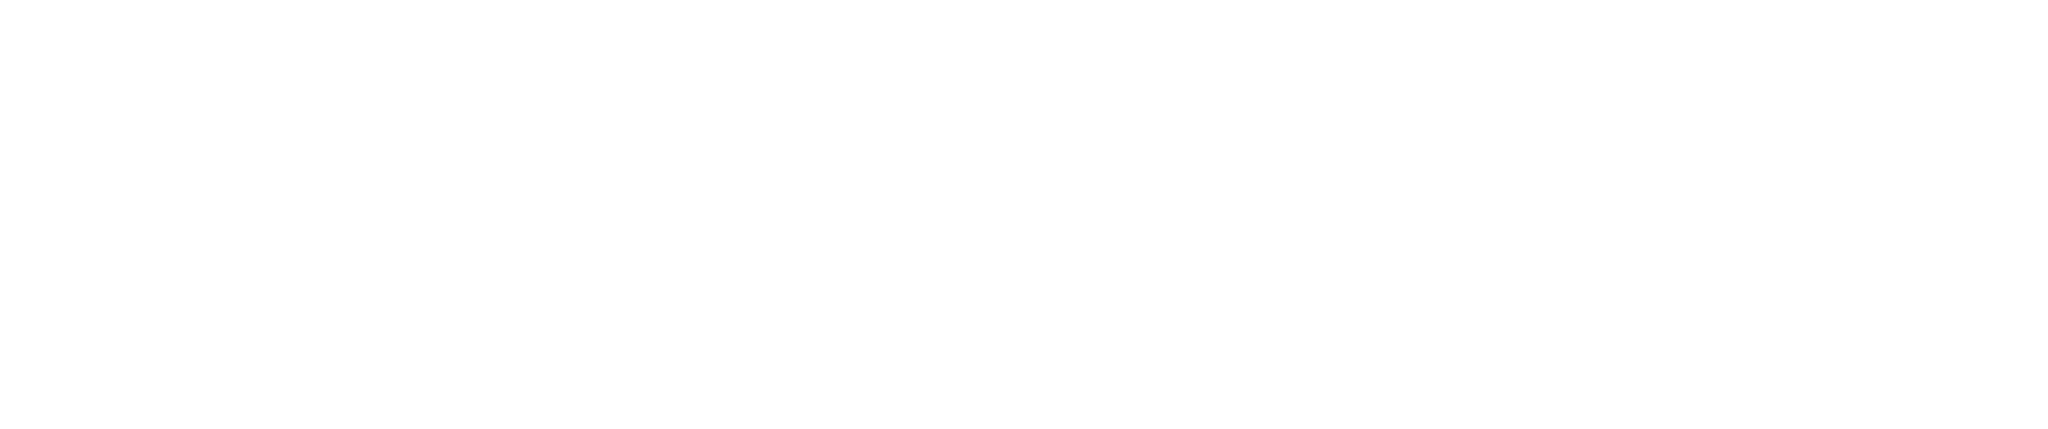 Schluender-Rechtsanwälte-Zitat-Klaus-Klages